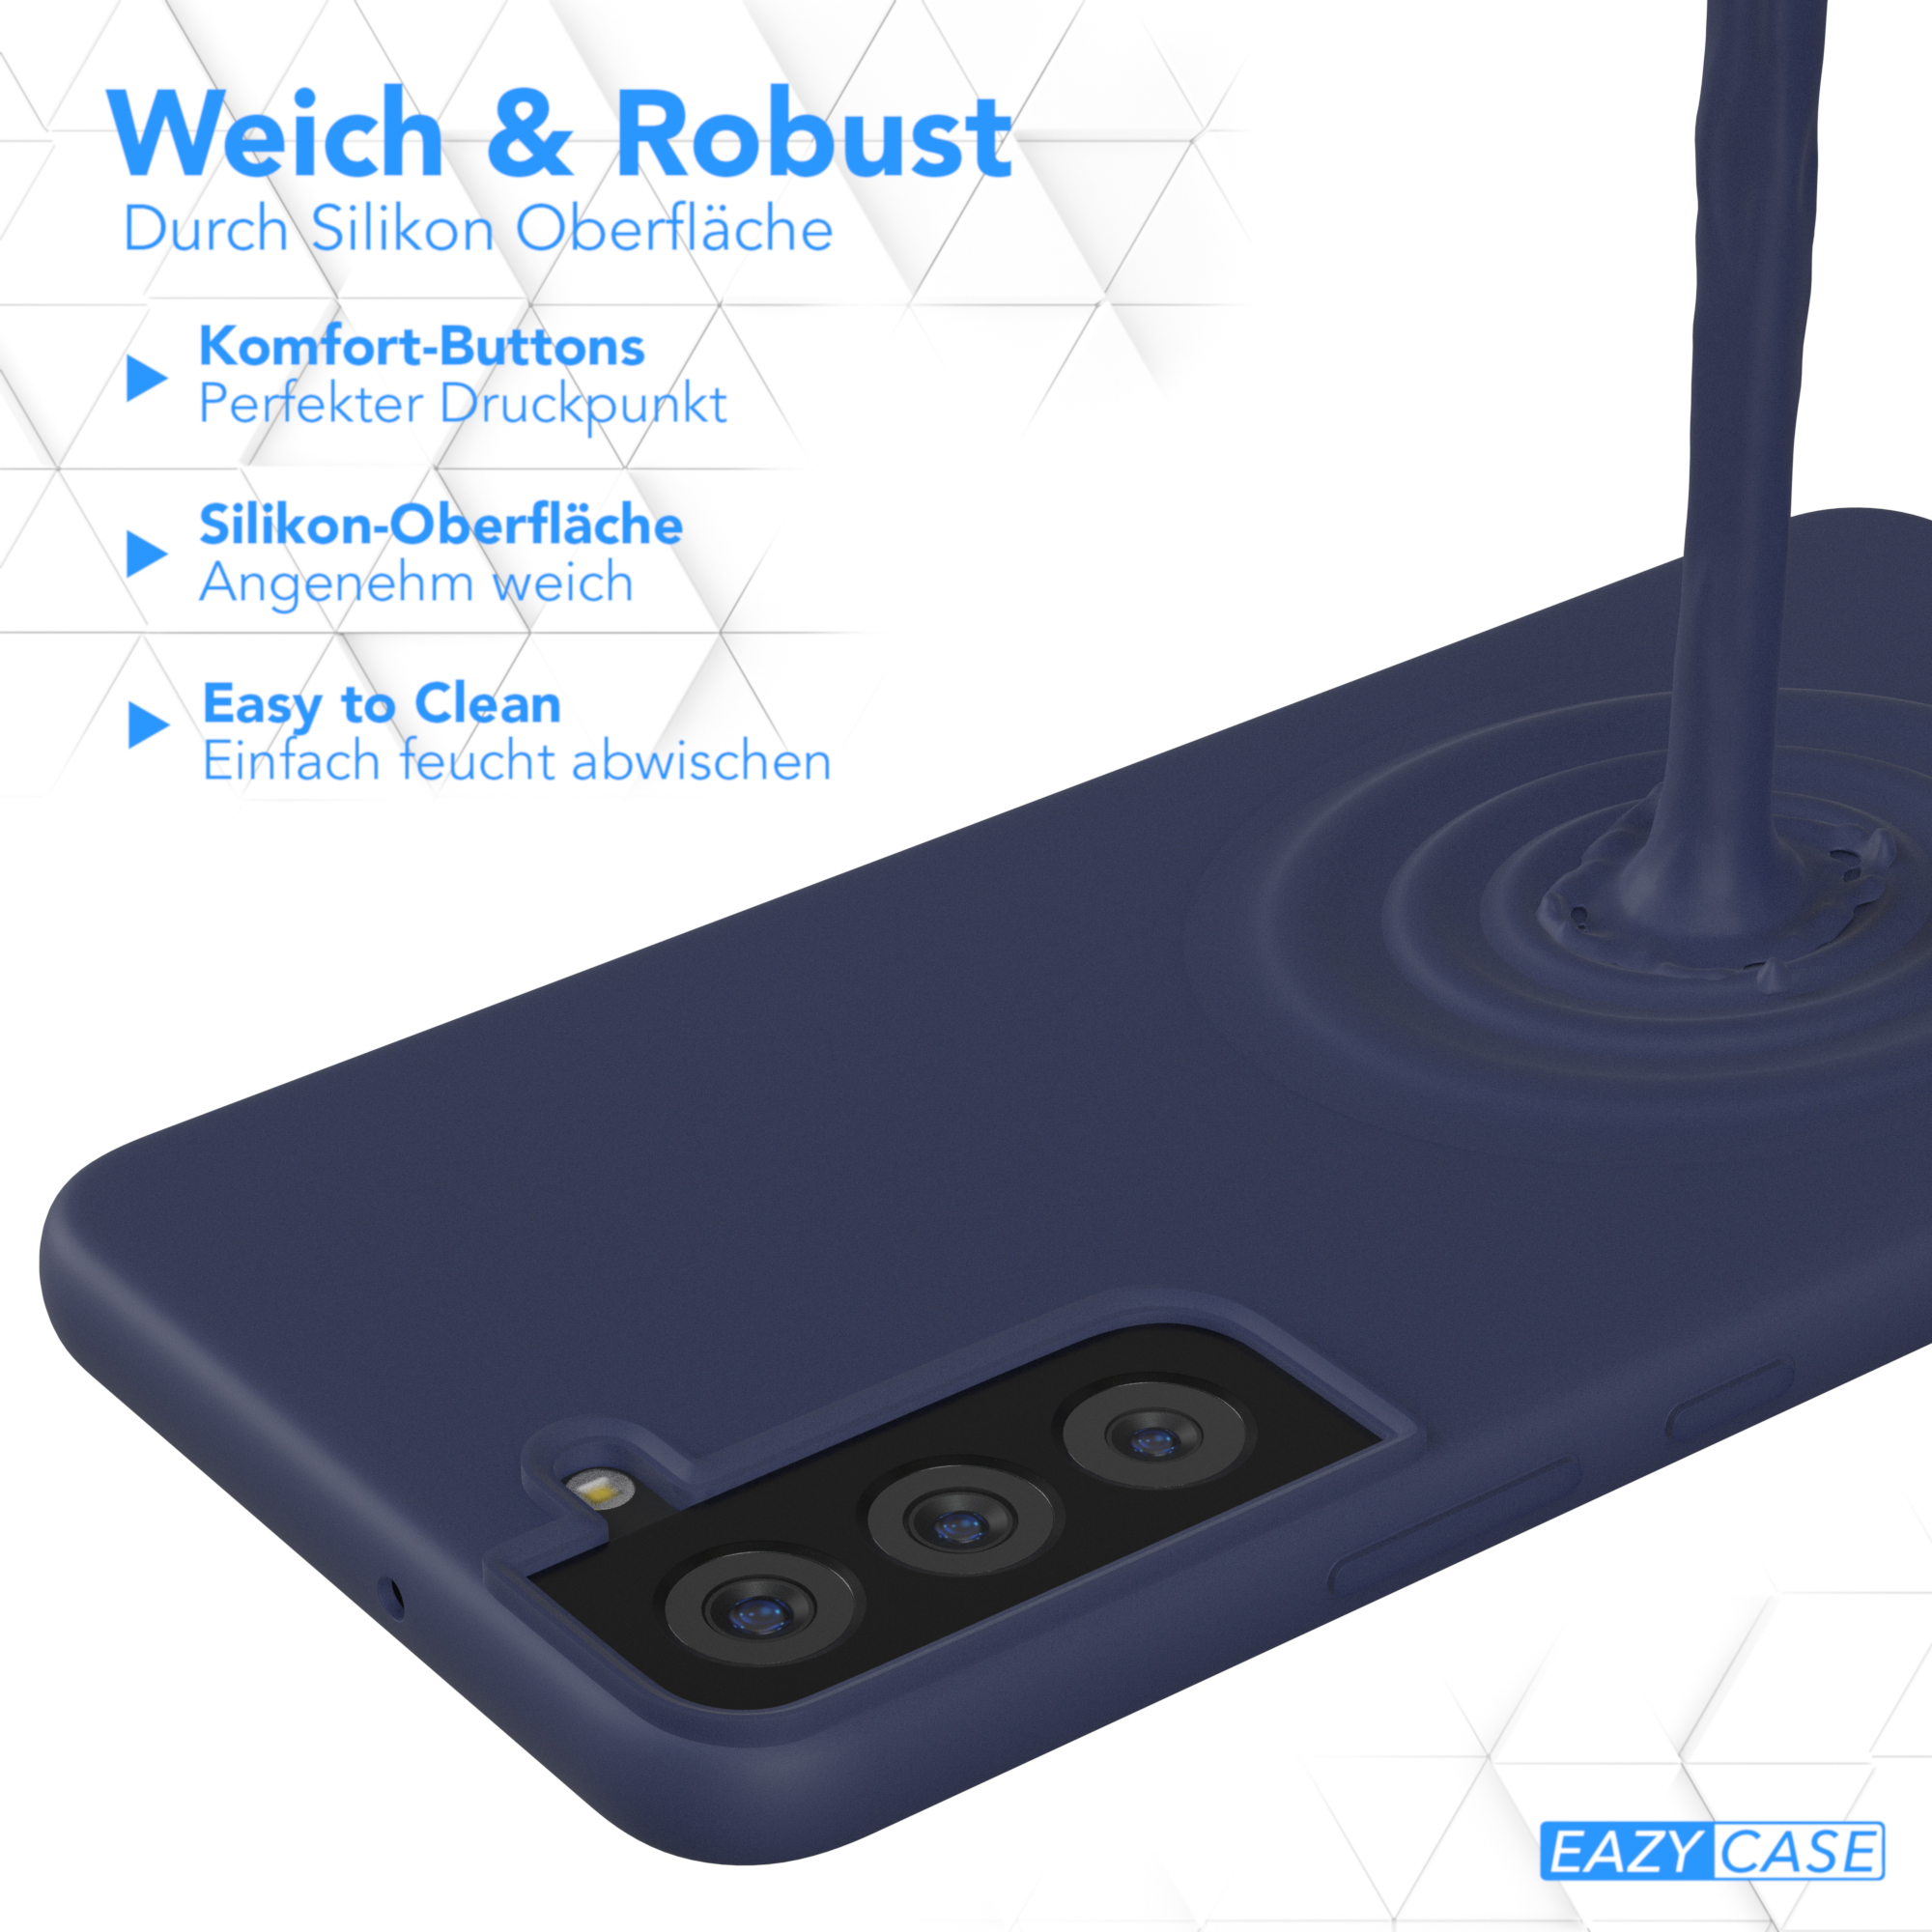 5G, Samsung, Premium Handycase, Silikon EAZY Backcover, / CASE Galaxy S22 Nachtblau Blau Plus